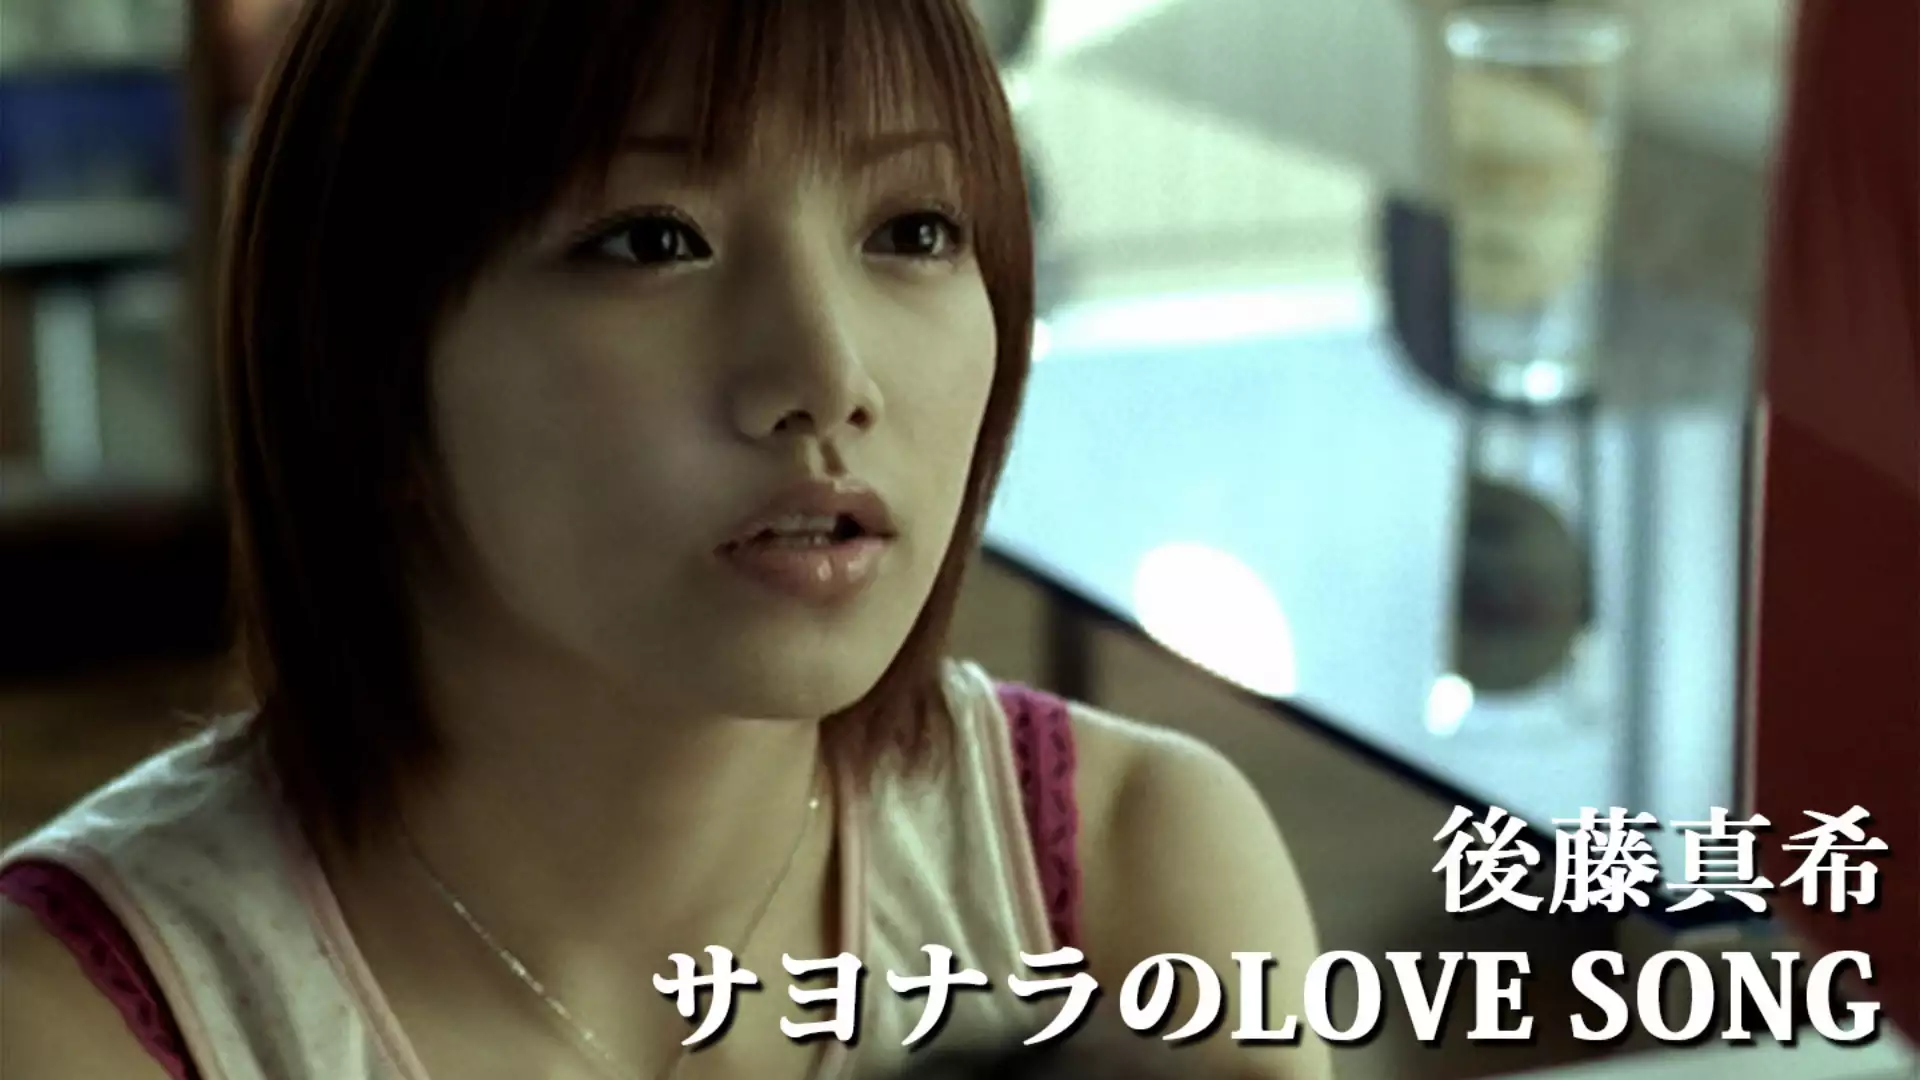 サヨナラのLOVE SONG(音楽・アイドル / 2004) - 動画配信 | U-NEXT 31